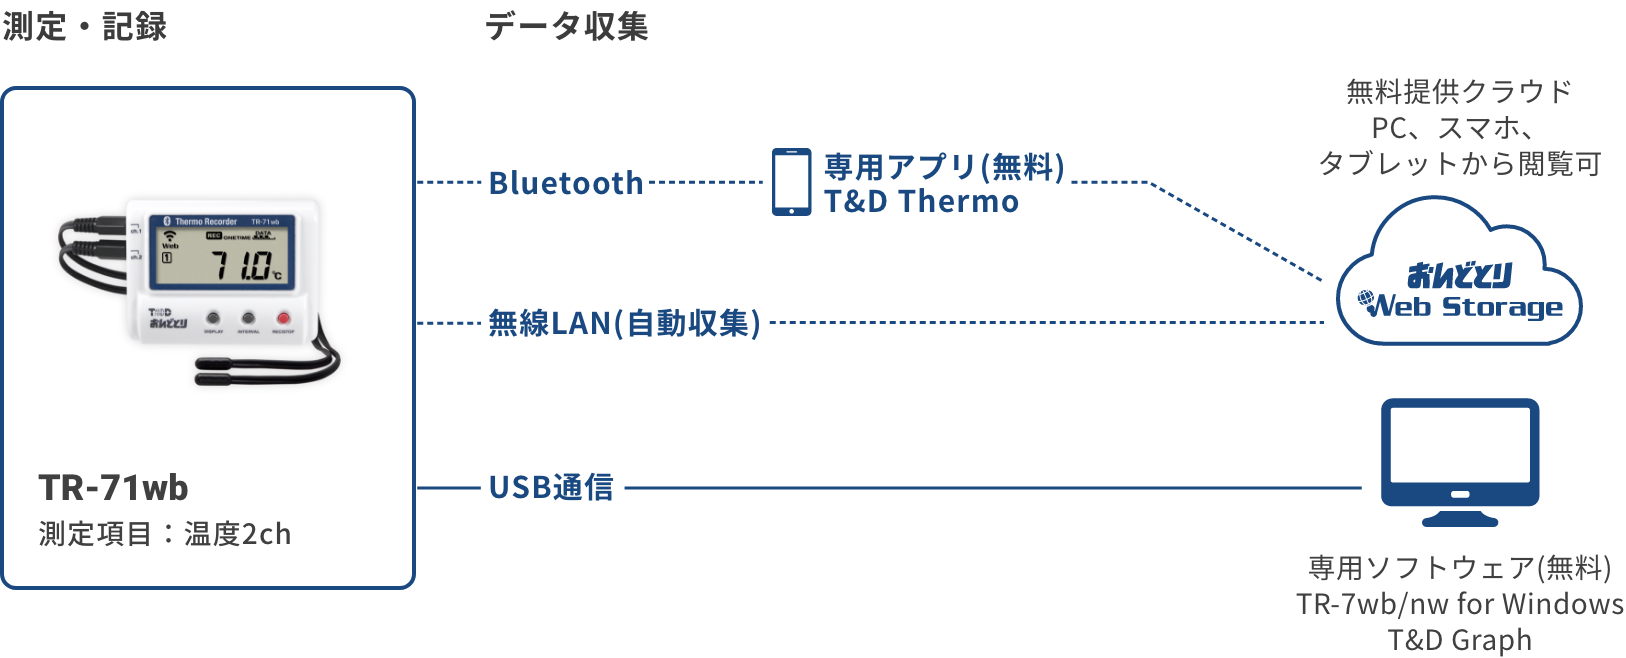 TR-71wbの構成図